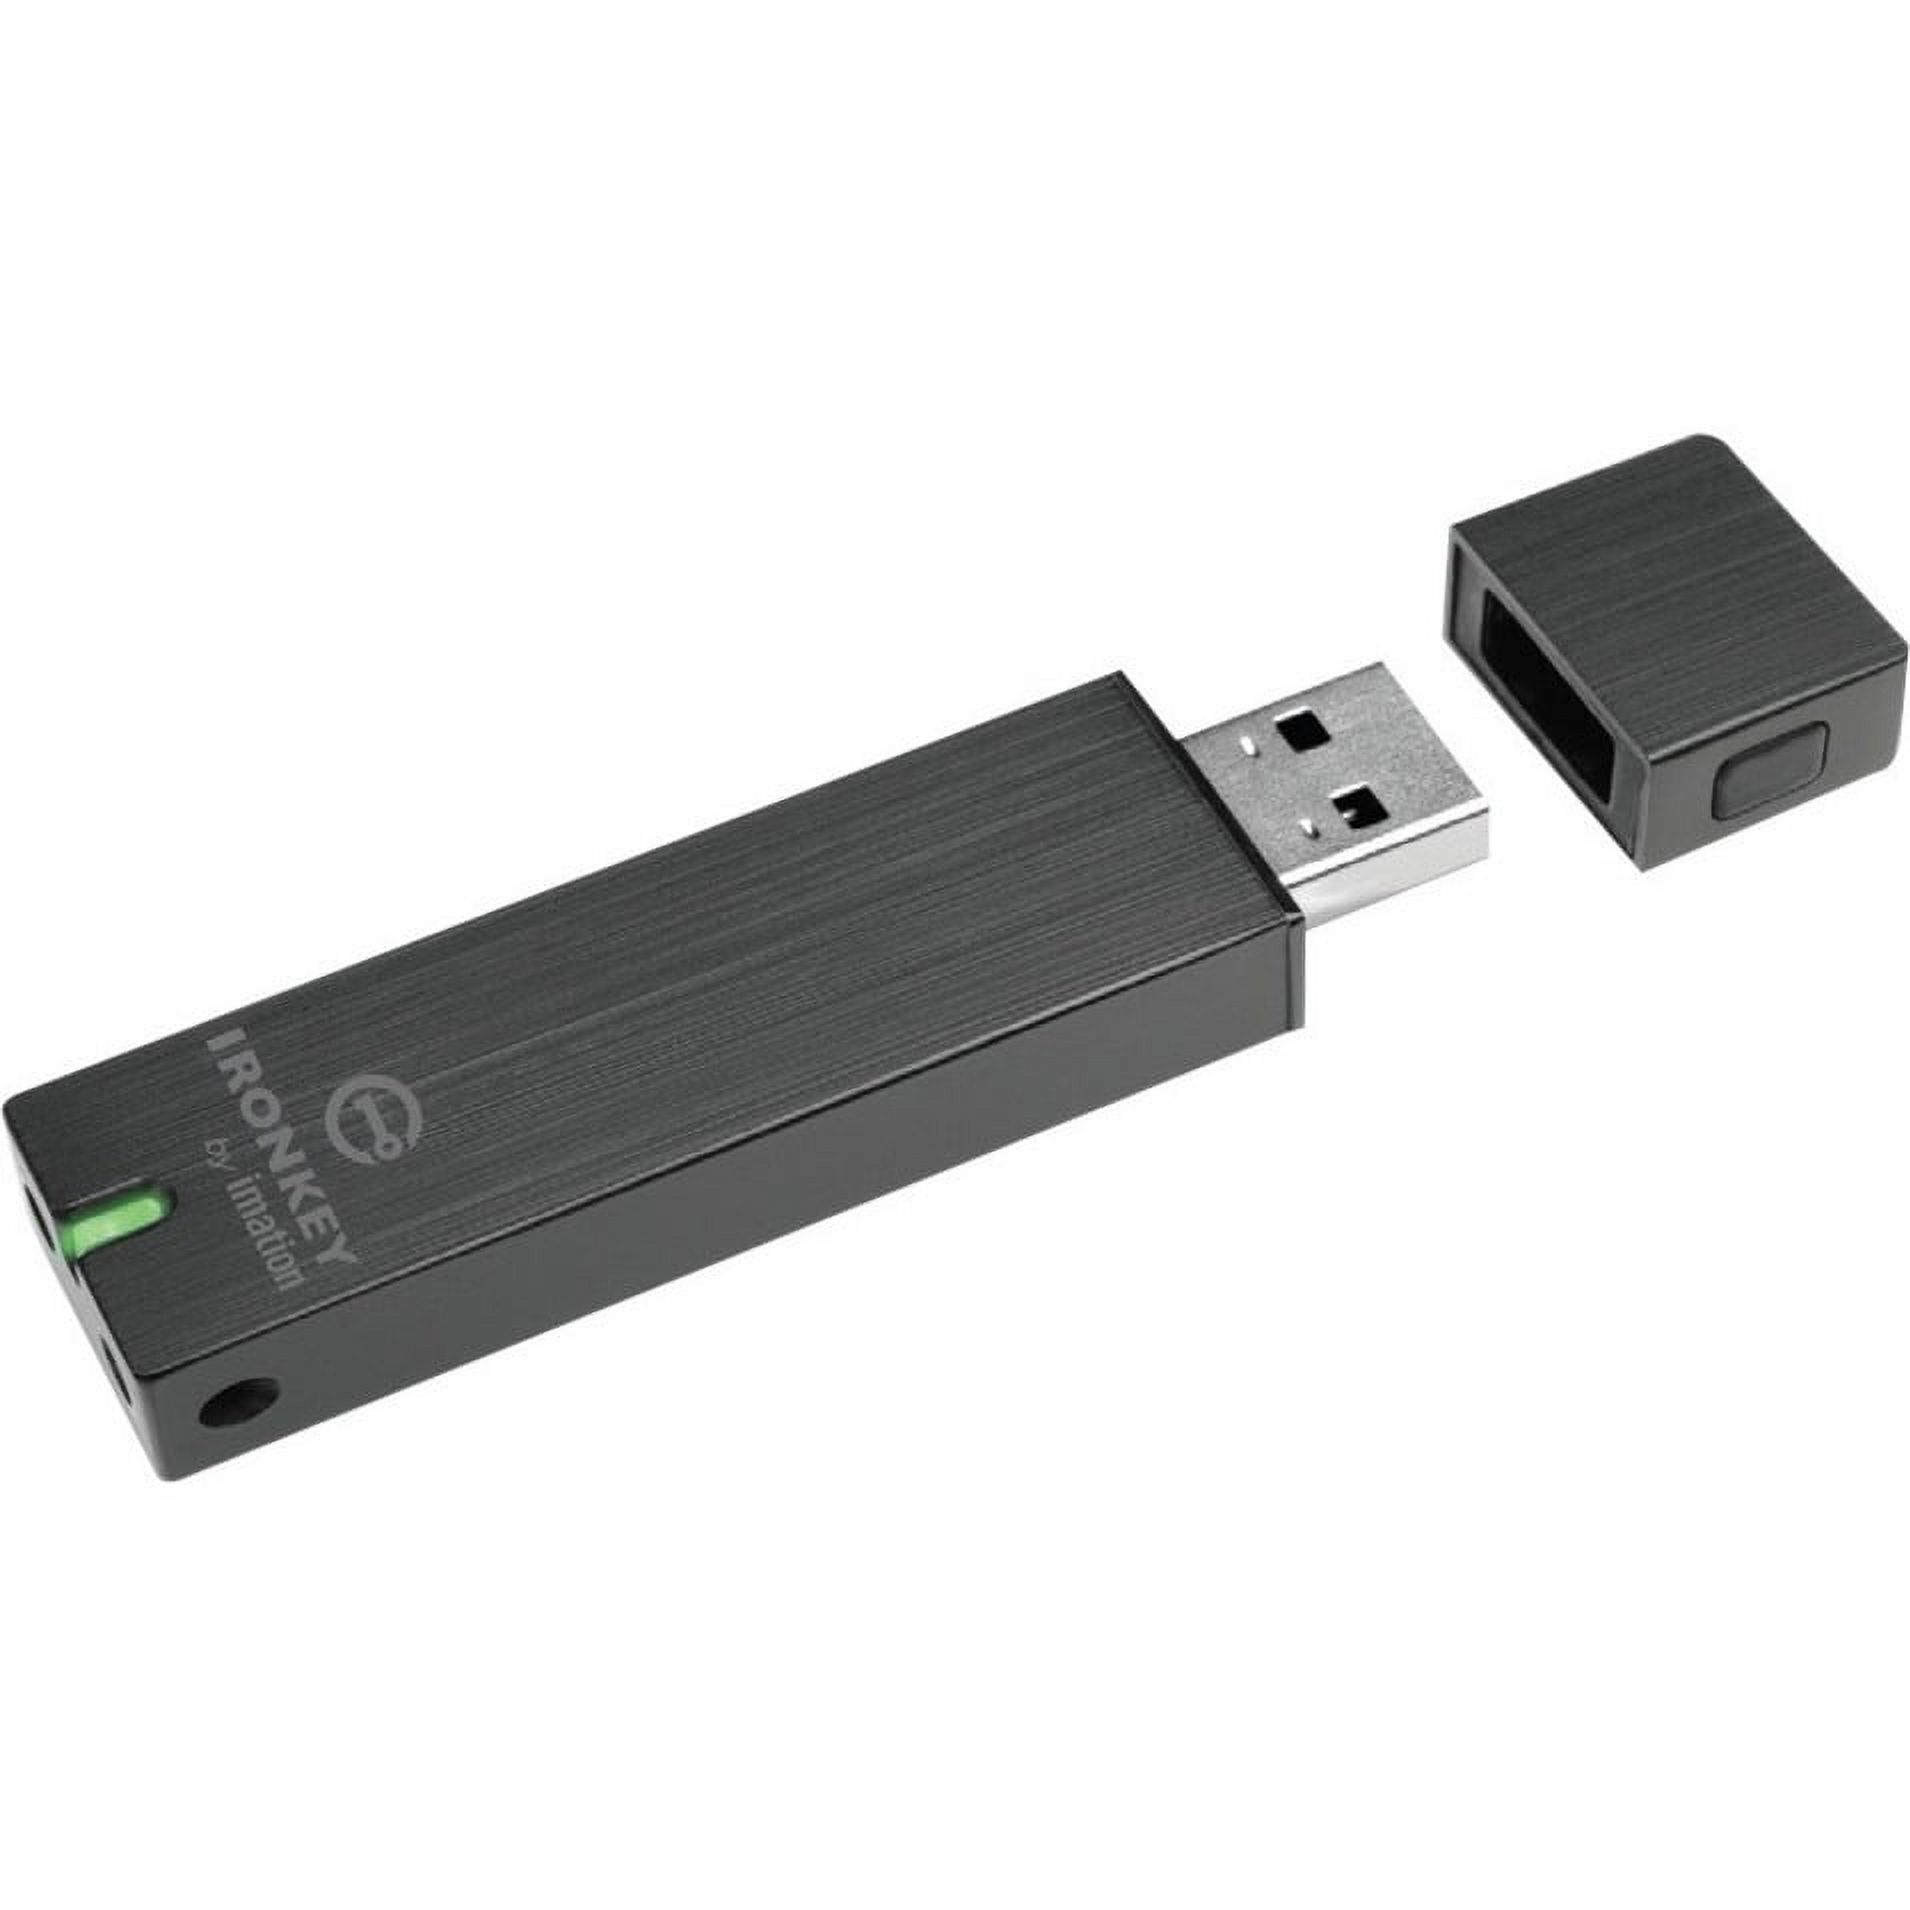 IronKey 8GB Basic S250 USB 2.0 Flash Drive - image 2 of 4